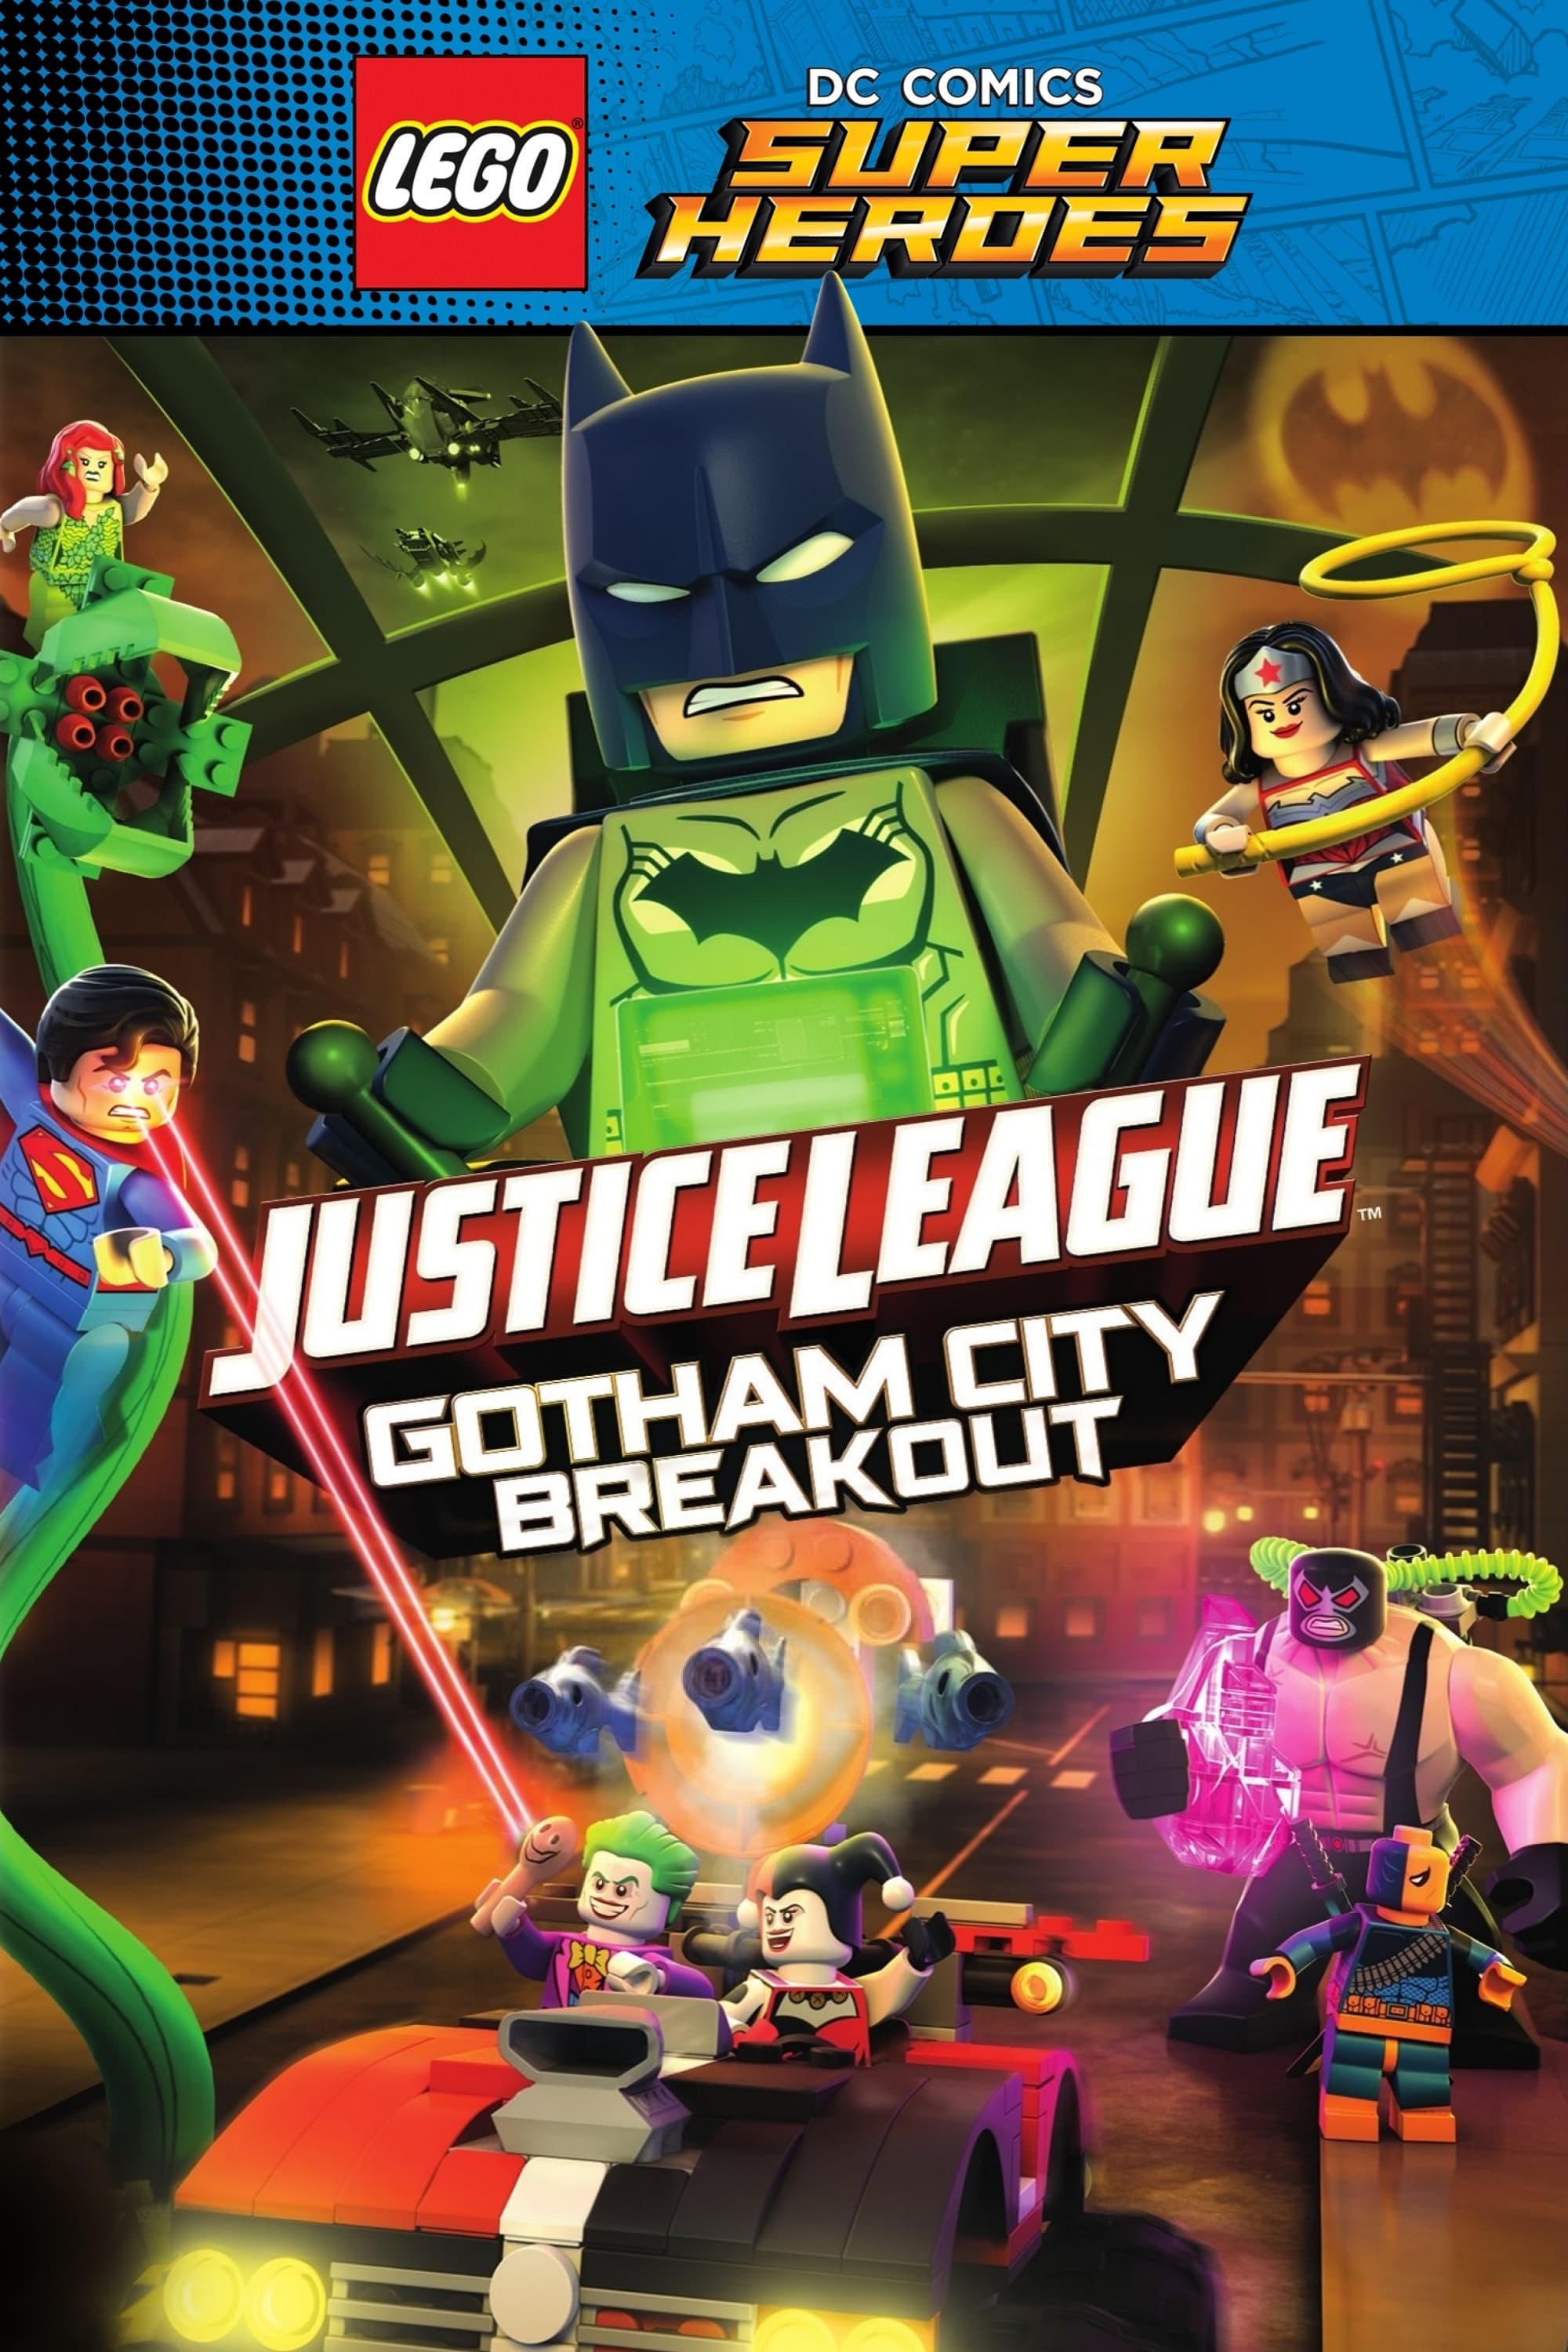 LEGO Super Heroes: DC Liga da Justiça - Revolta em Gotham